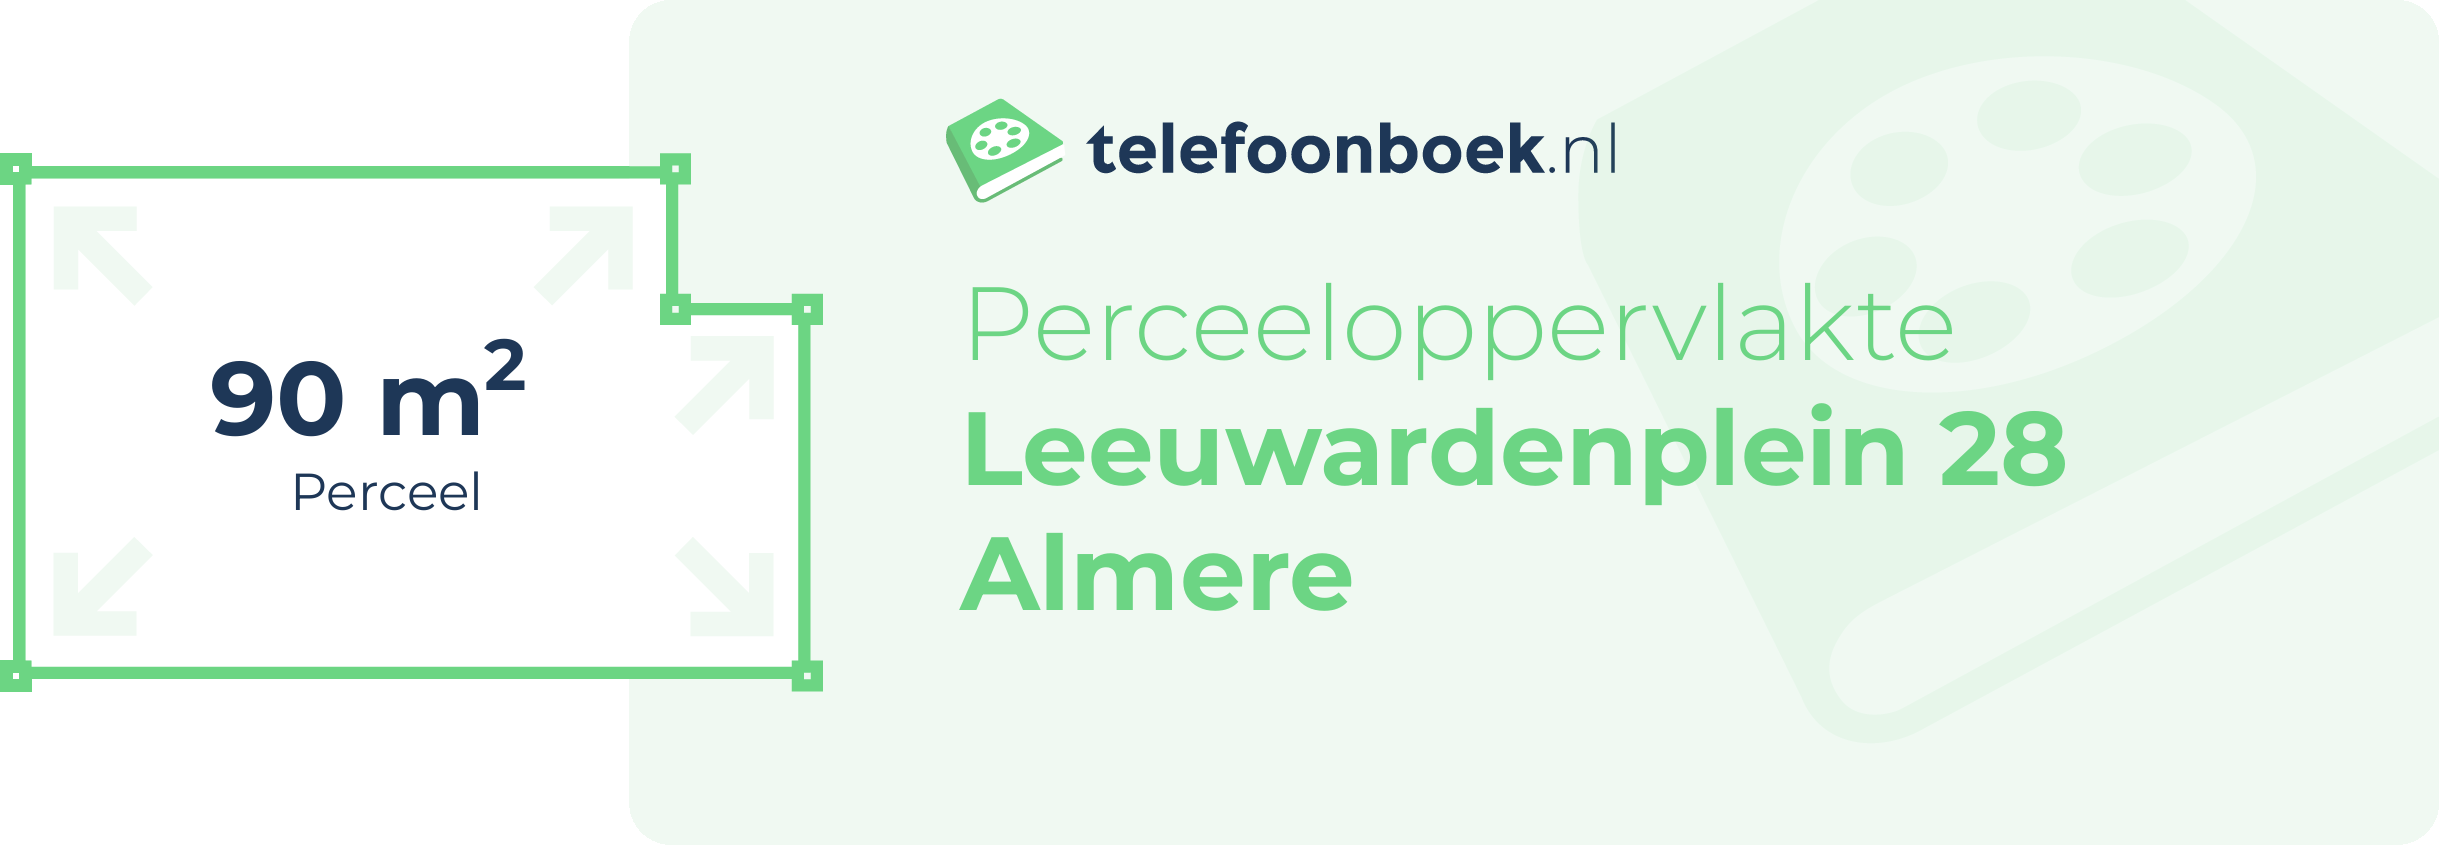 Perceeloppervlakte Leeuwardenplein 28 Almere